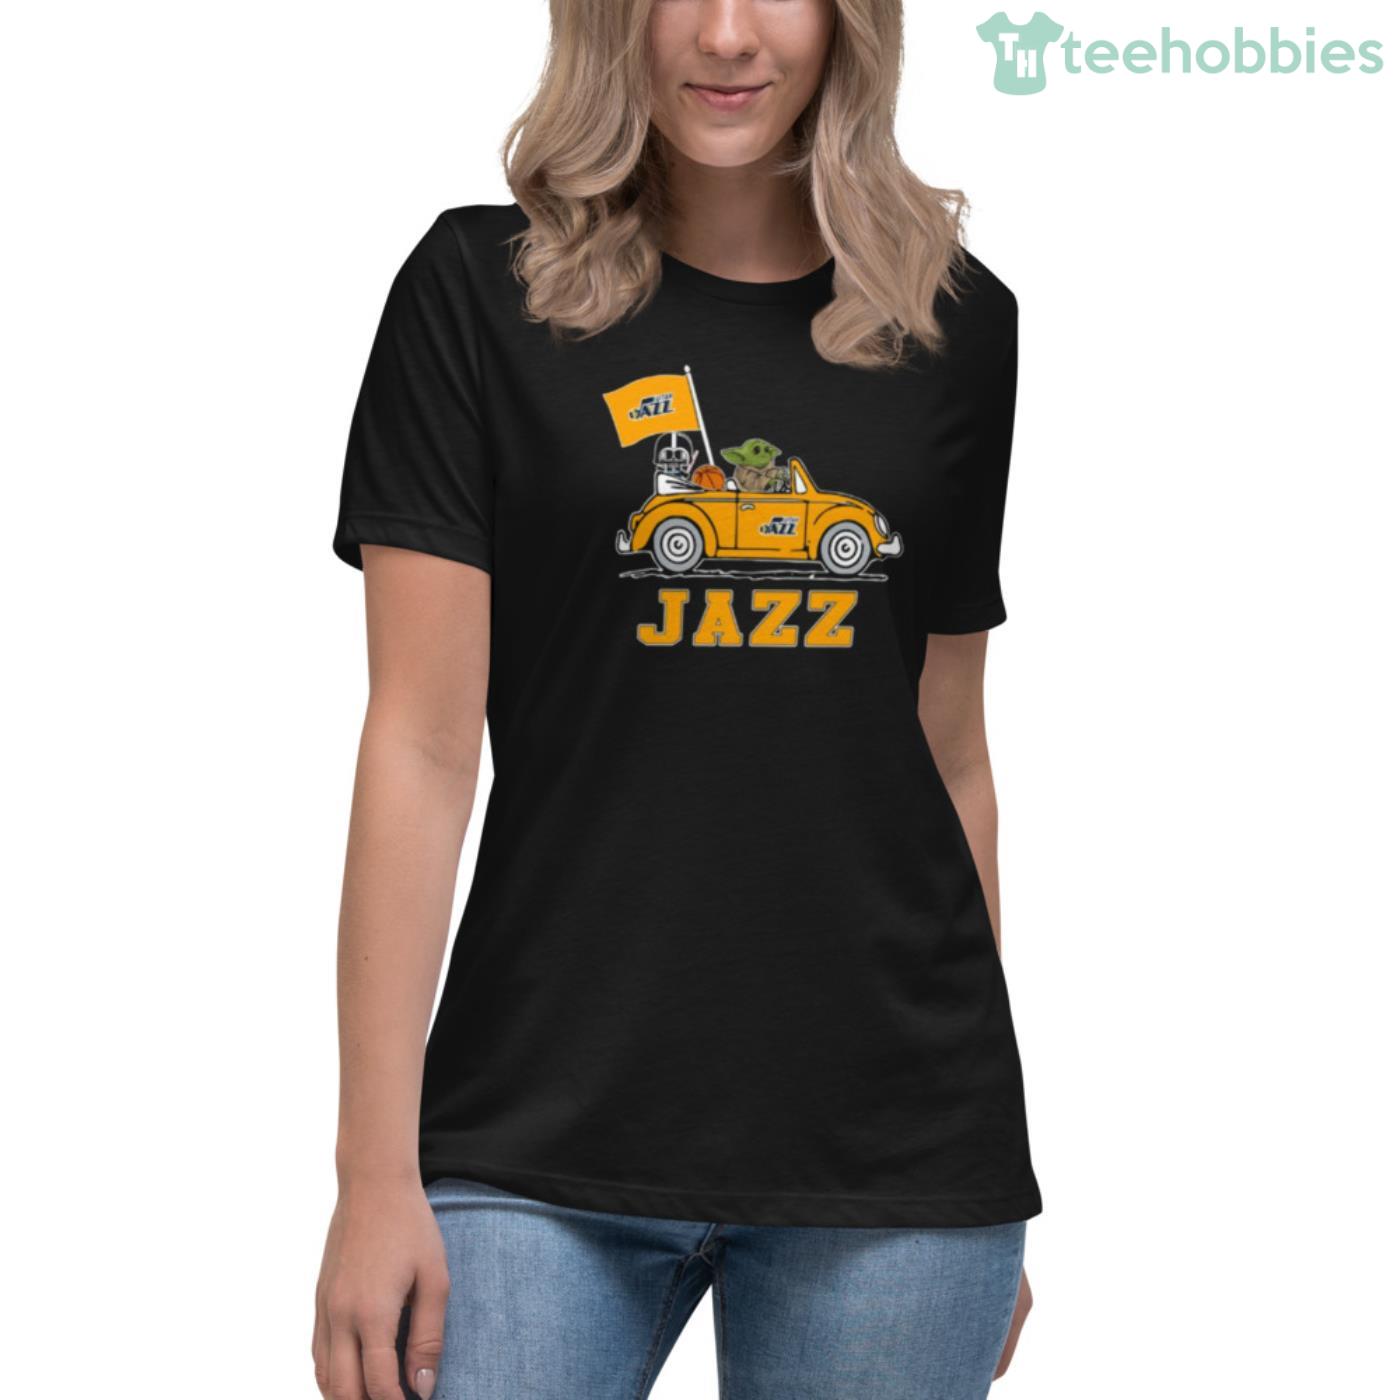 utah jazz shirt womens